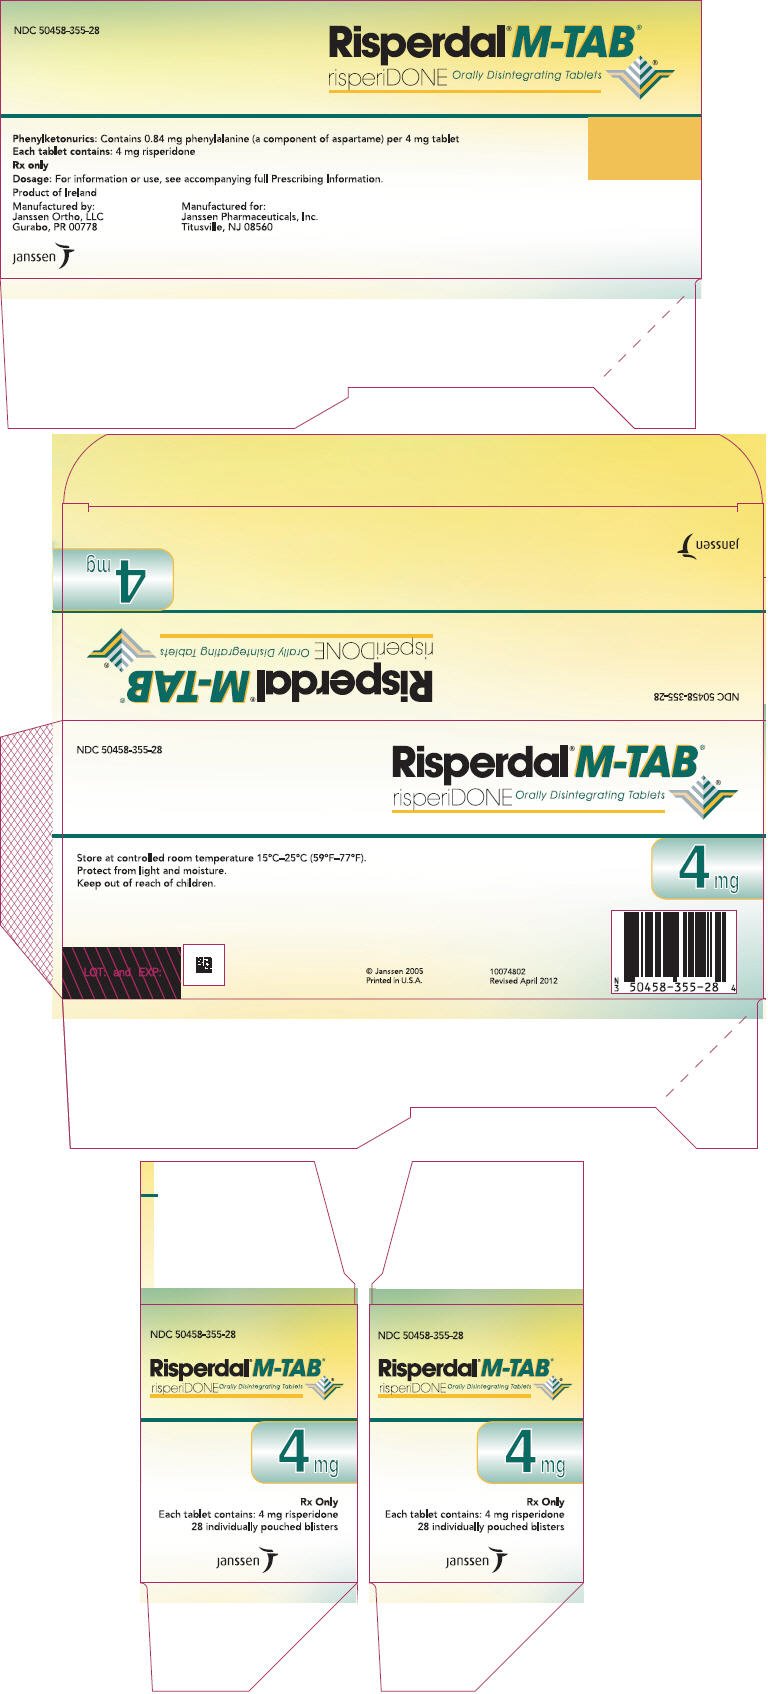 PRINCIPAL DISPLAY PANEL - 4 mg Tablet Carton